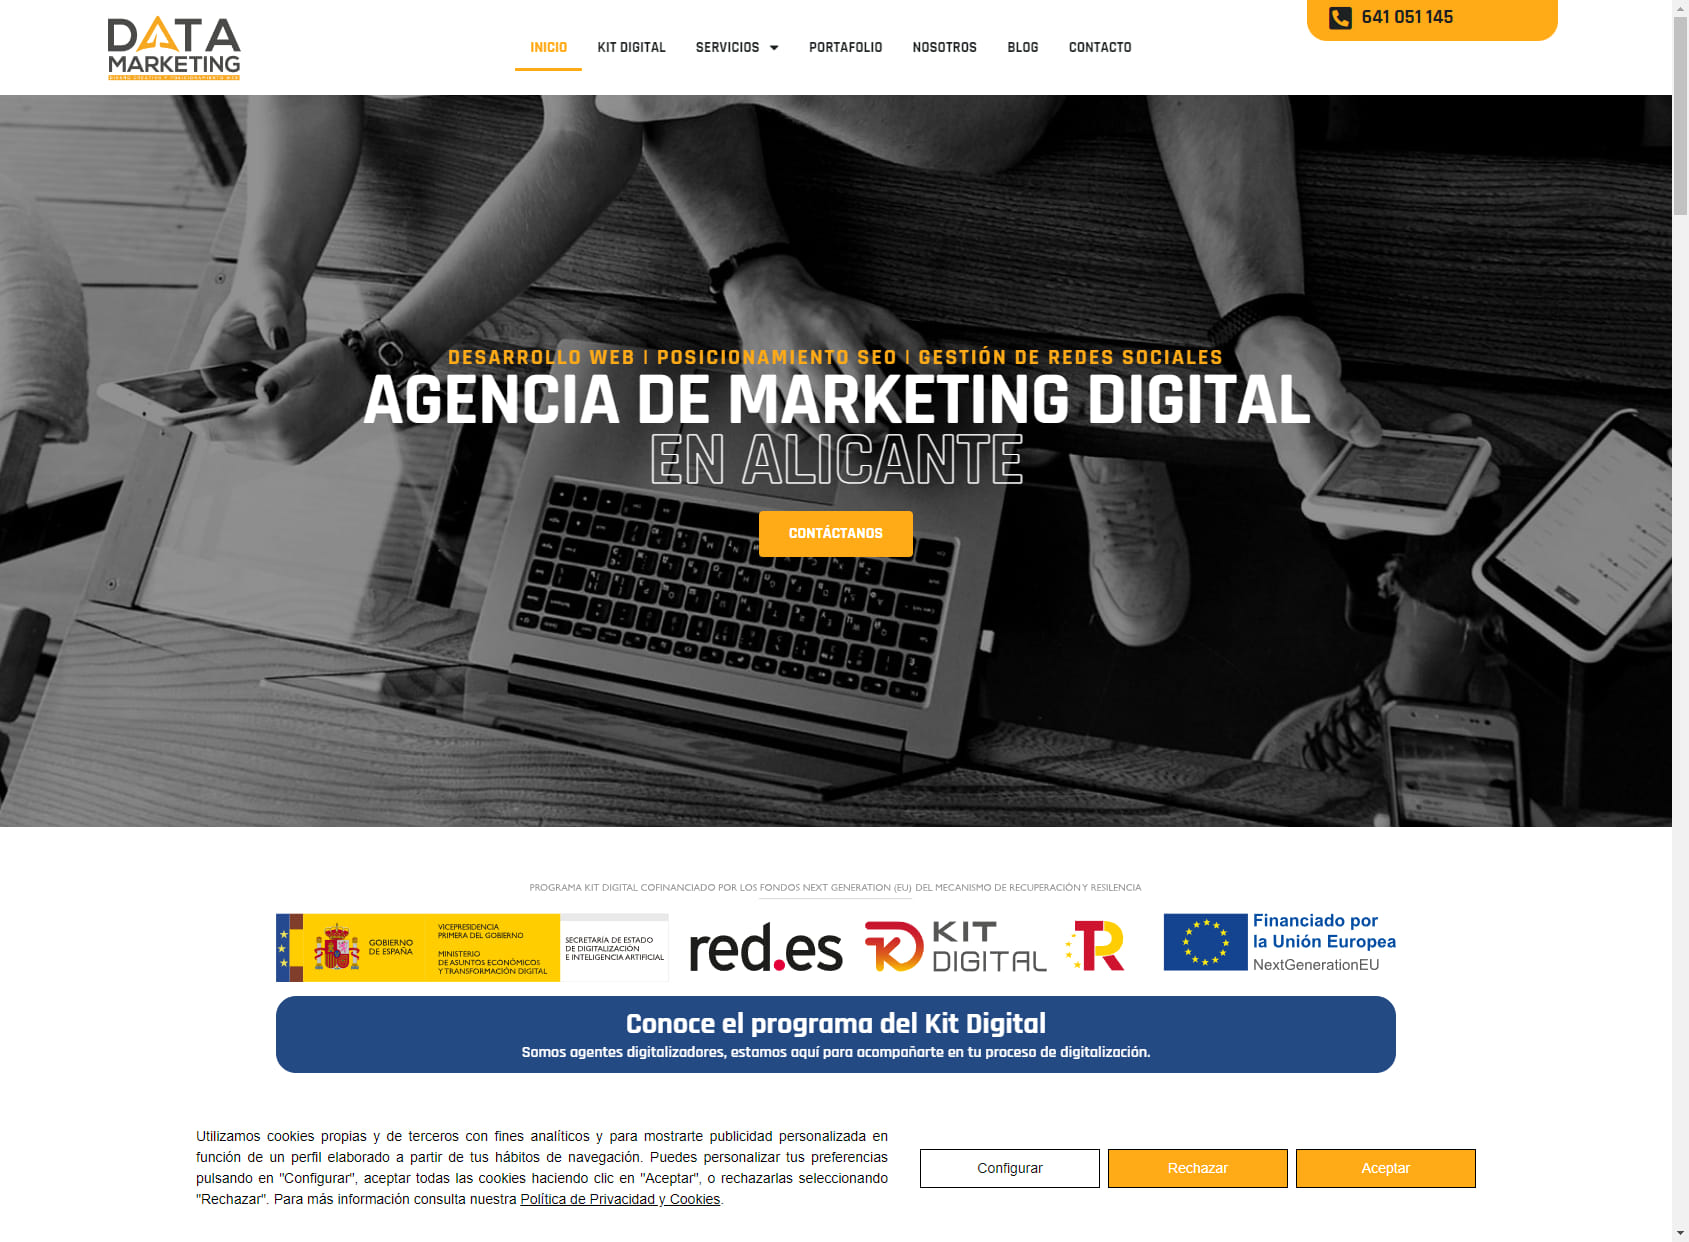 Data Marketing Alicante